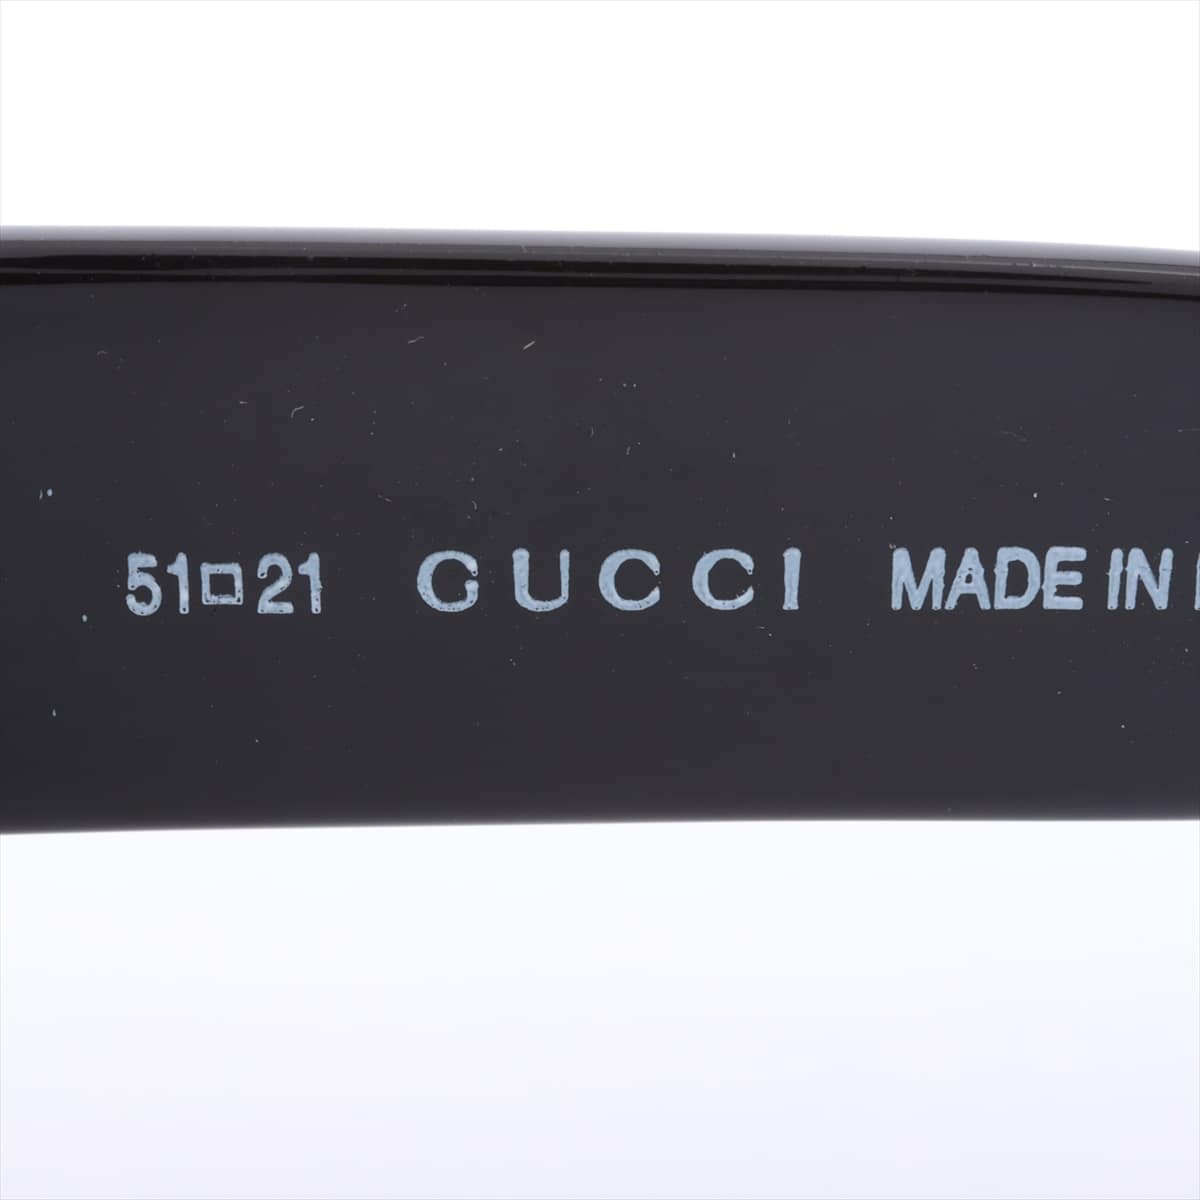 Gucci Sunglass Plastic Black GG2407/S